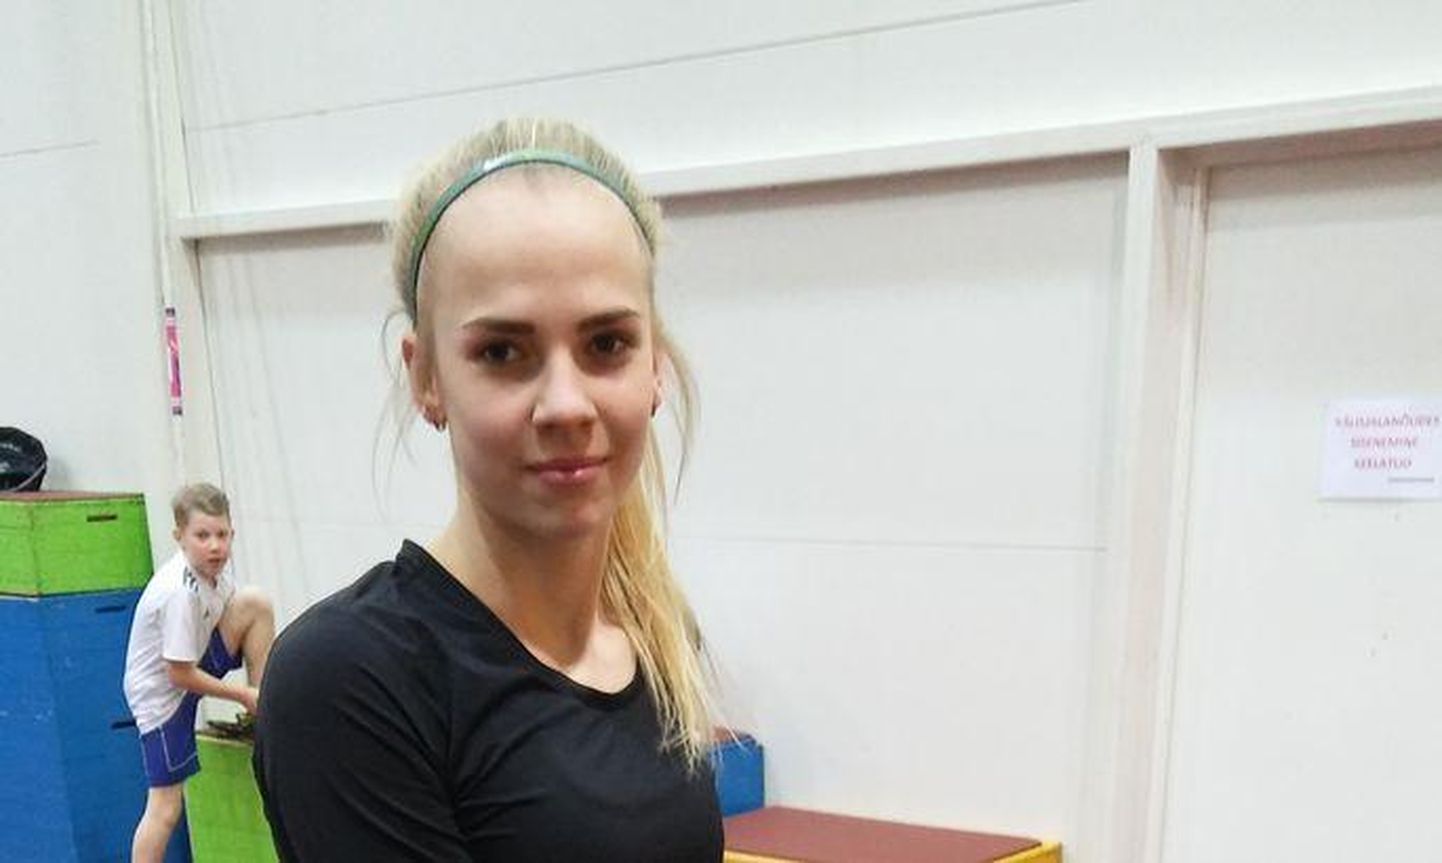 Rakvere kergejõustikuklubi ViKe teivashüppeneiu Marleen Mülla võitis kuni 18-aastaste neidude teivashüppes kuldmedali.